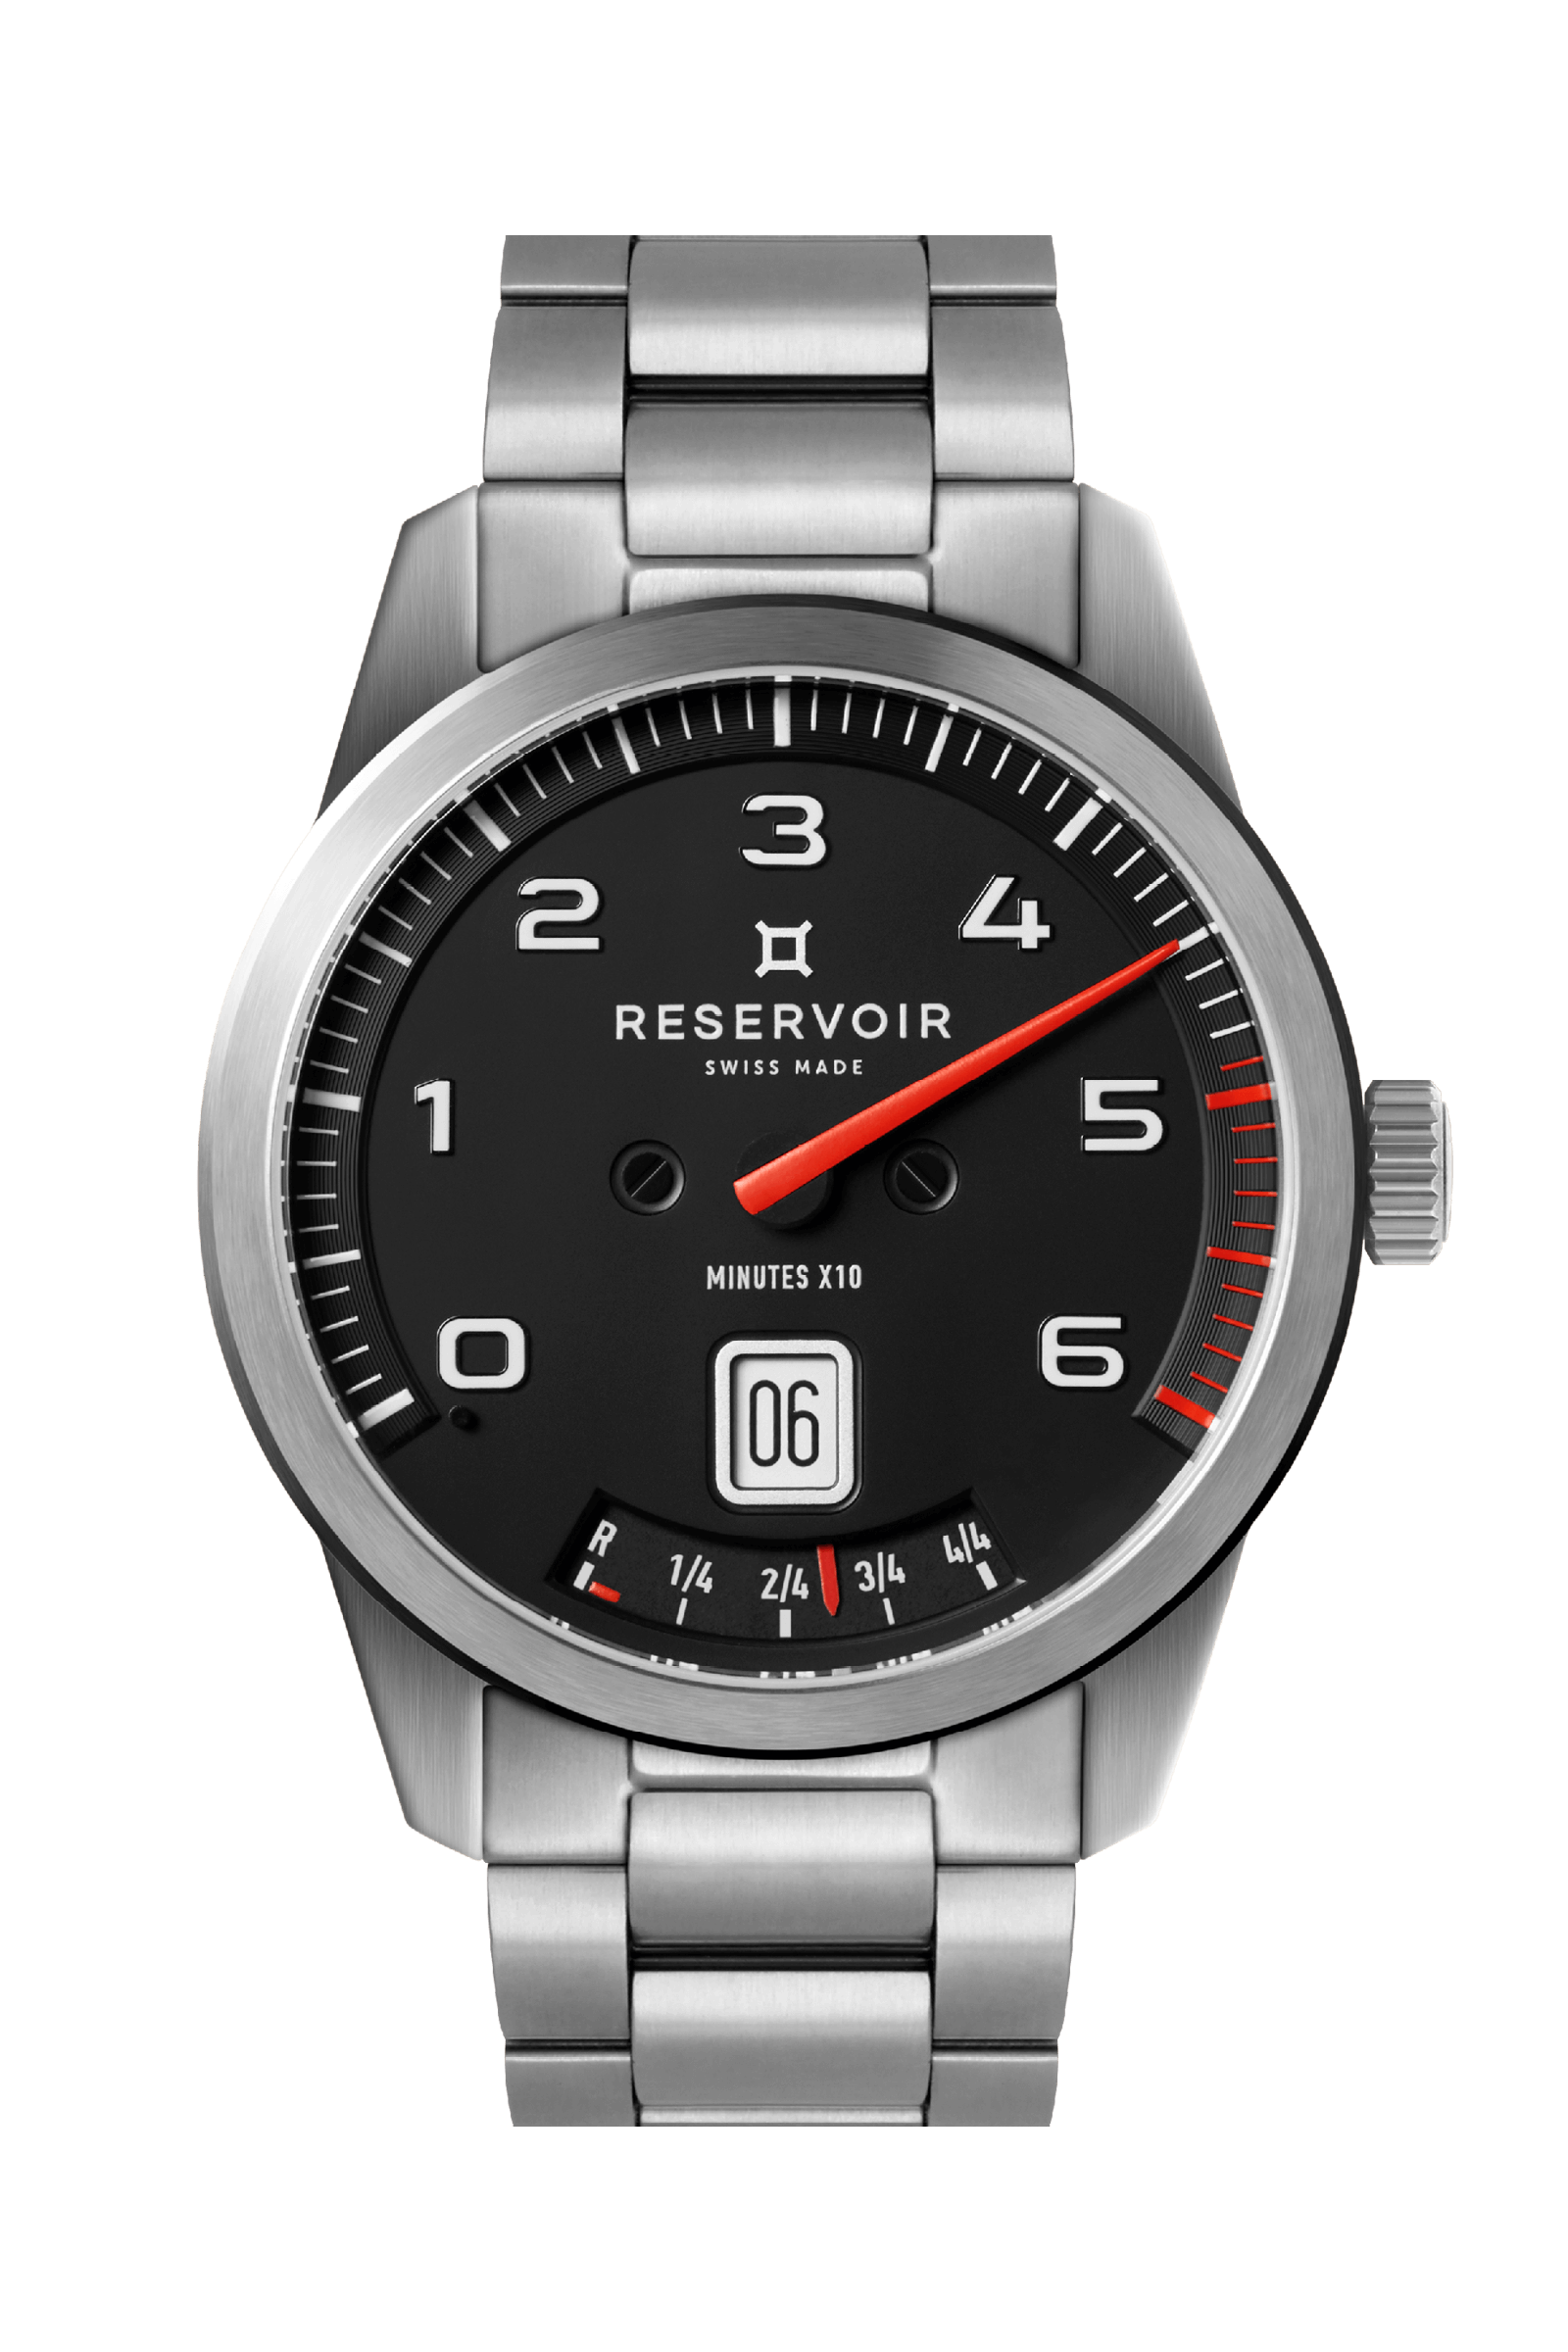 メディア レゼルボワール 漆黒、ライトグレー、ダークグレーブルーを基調としたラグジュアリーなエディトリアルスタイルの腕時計。